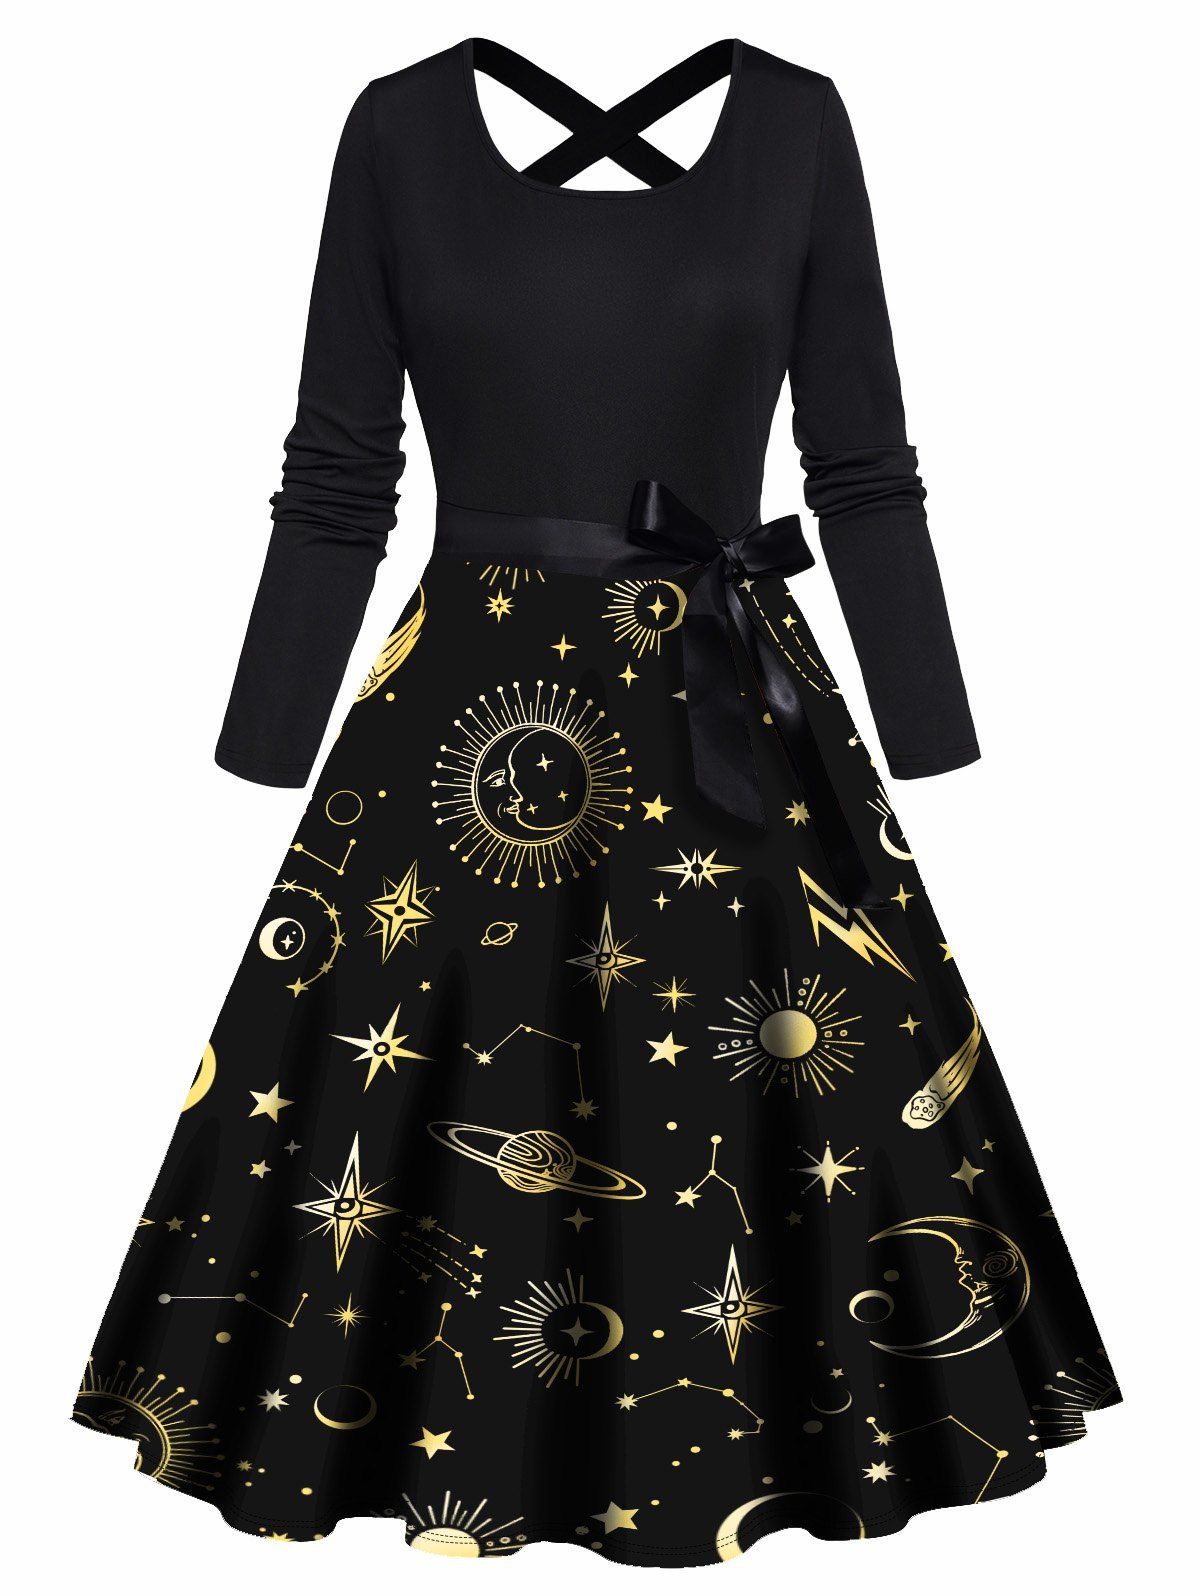 Sun Moon Planet Star Print Dress Bowknot Belted Crisscross High Waisted Long Sleeve A Line Midi Dress - BLACK XXL